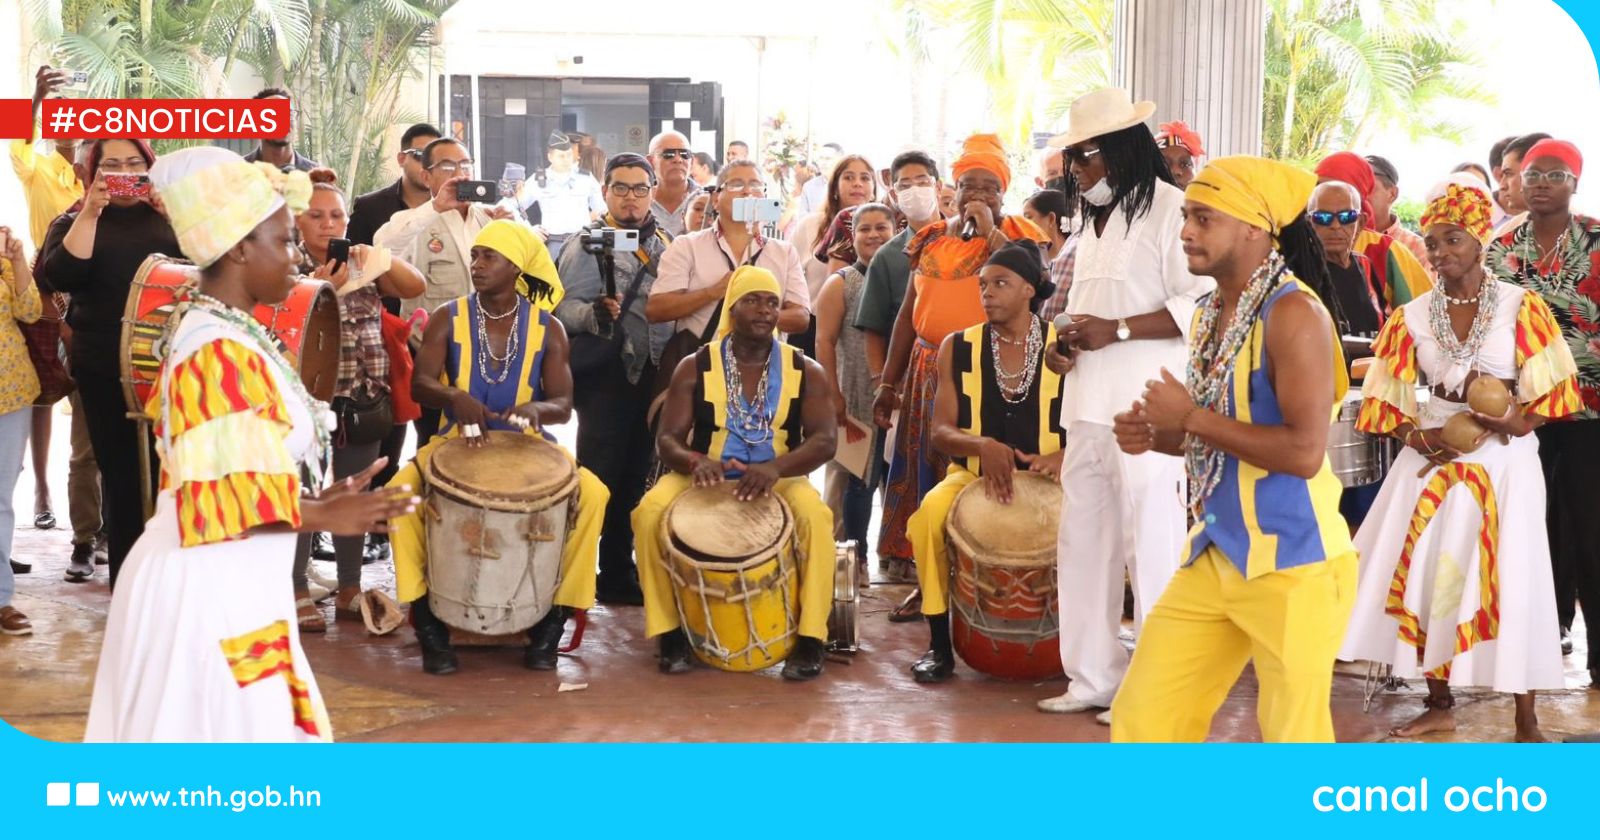 Presidente del Congreso Nacional participa en Feria Cultural Garífuna